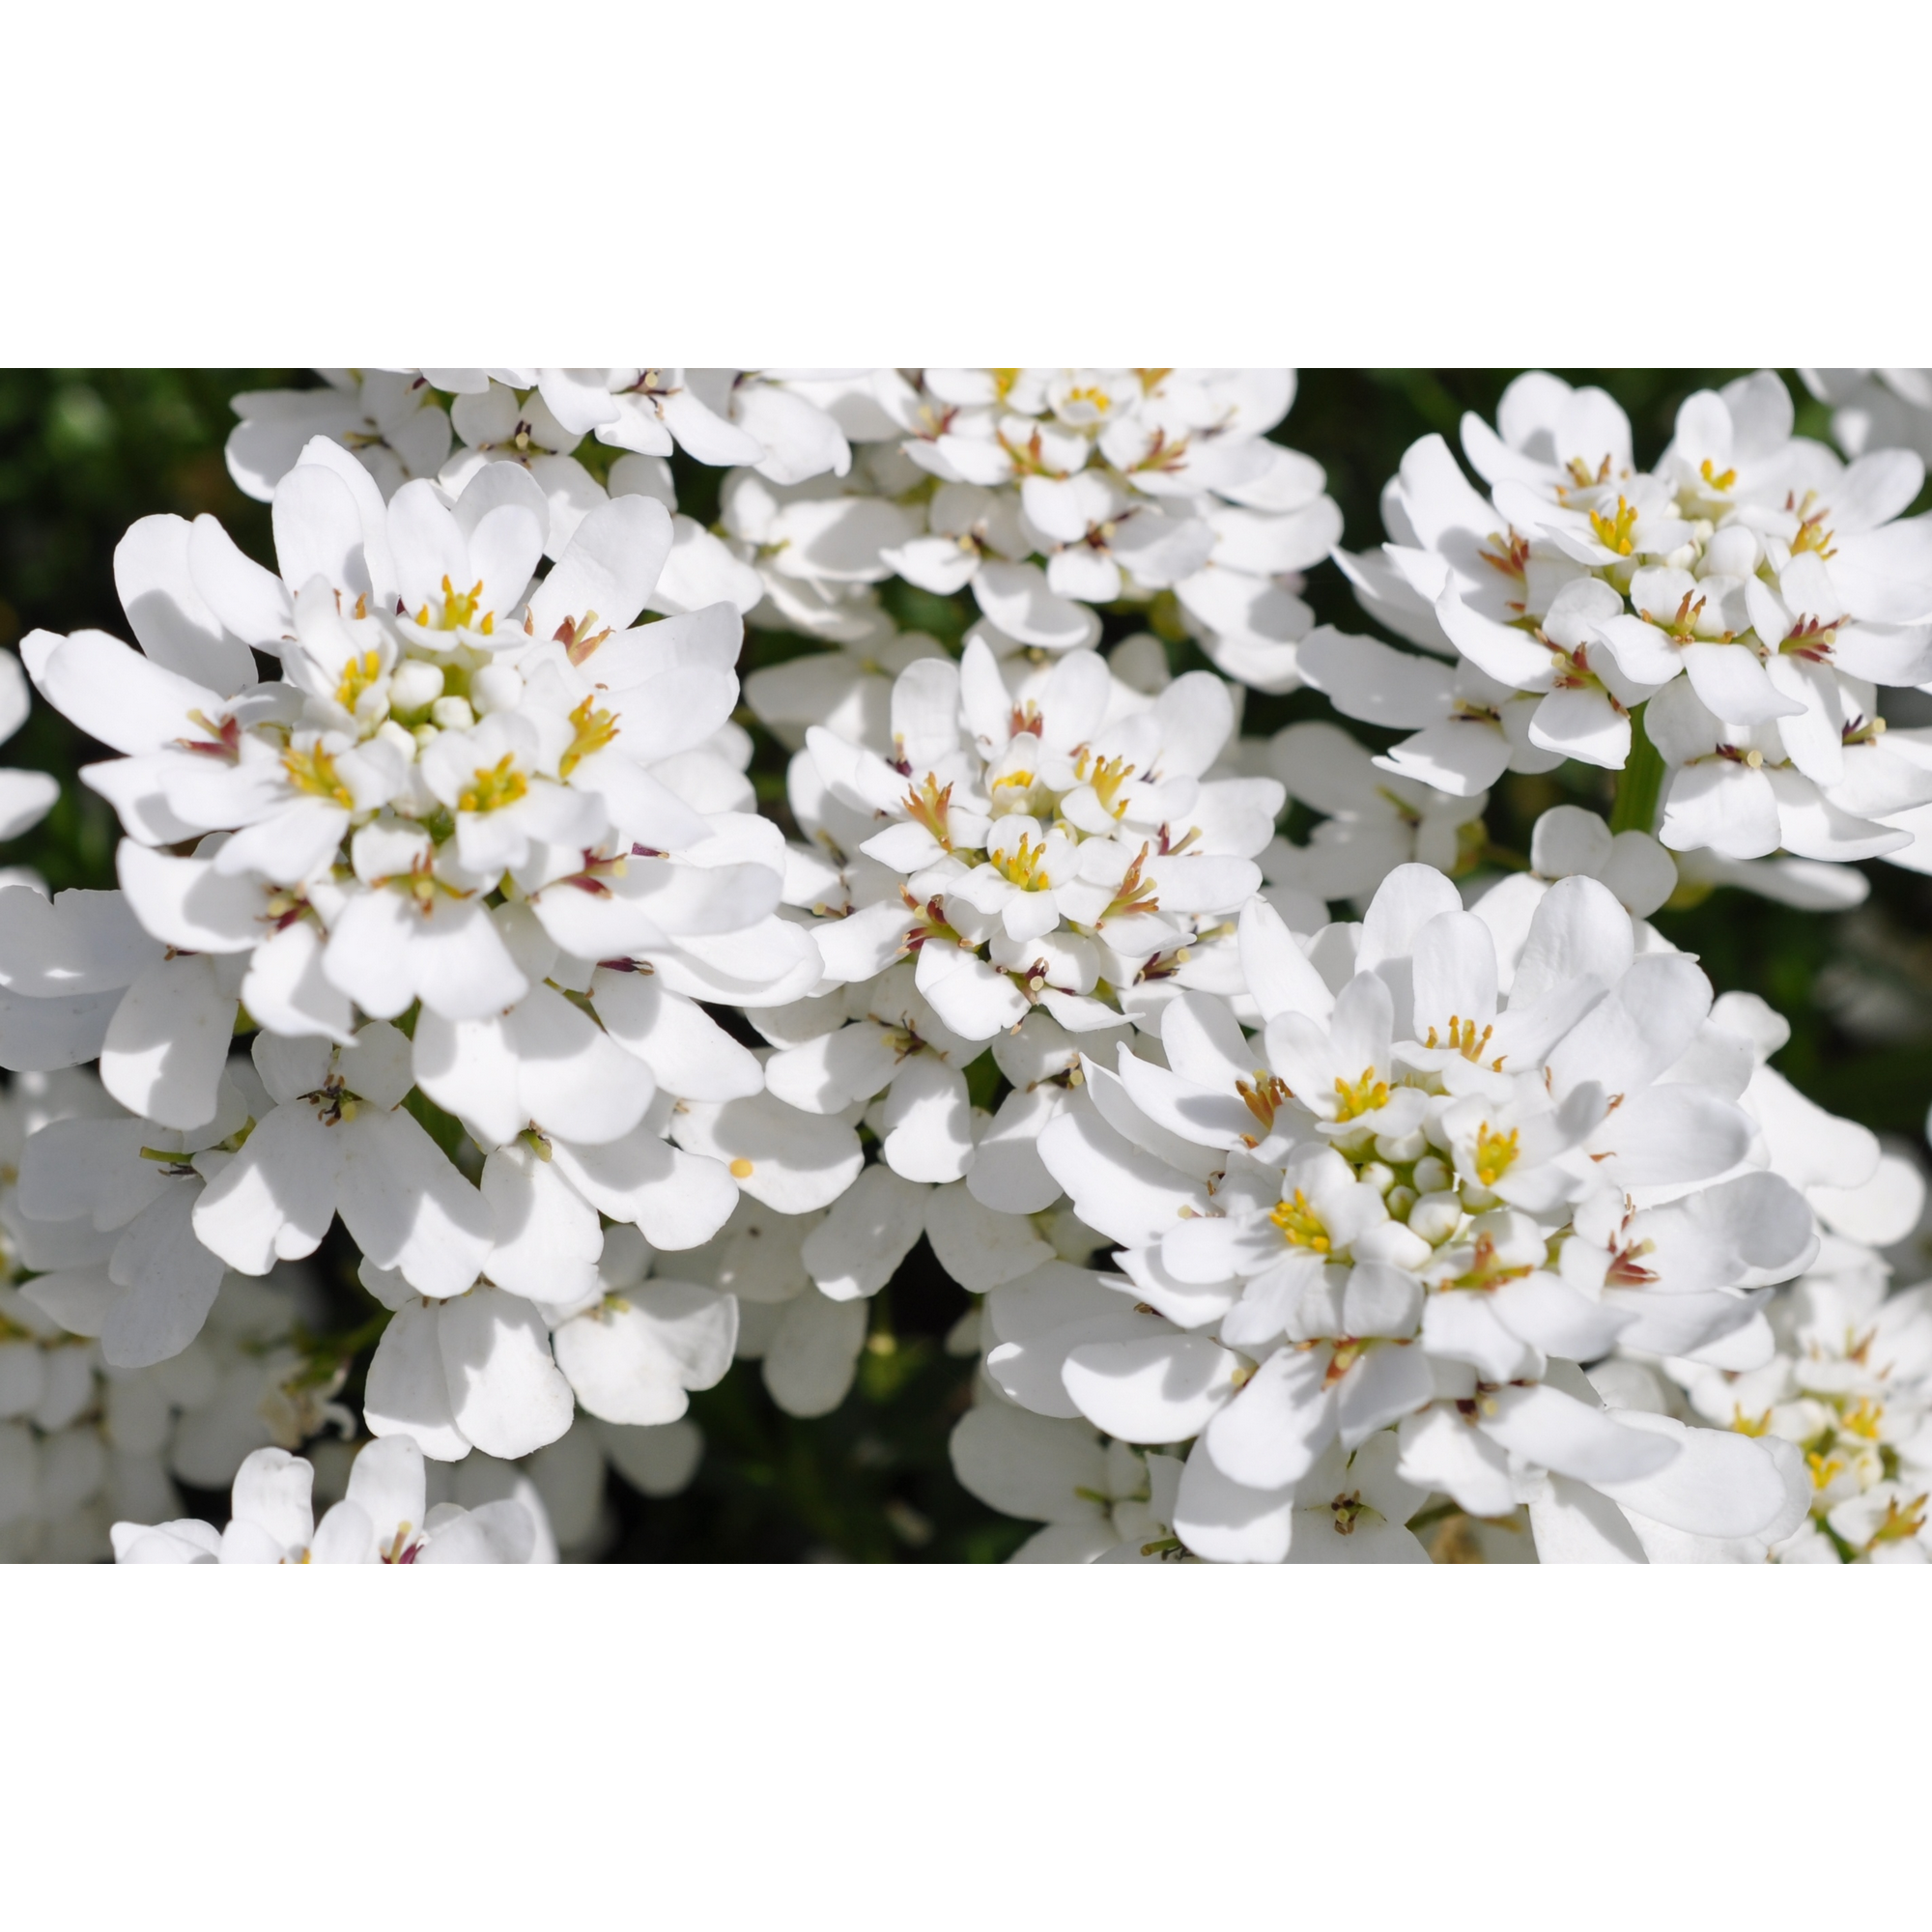 Immergrüne Schleifenblume 'Fischbeck' weiß 11 cm Topf, 3er-Set + product picture